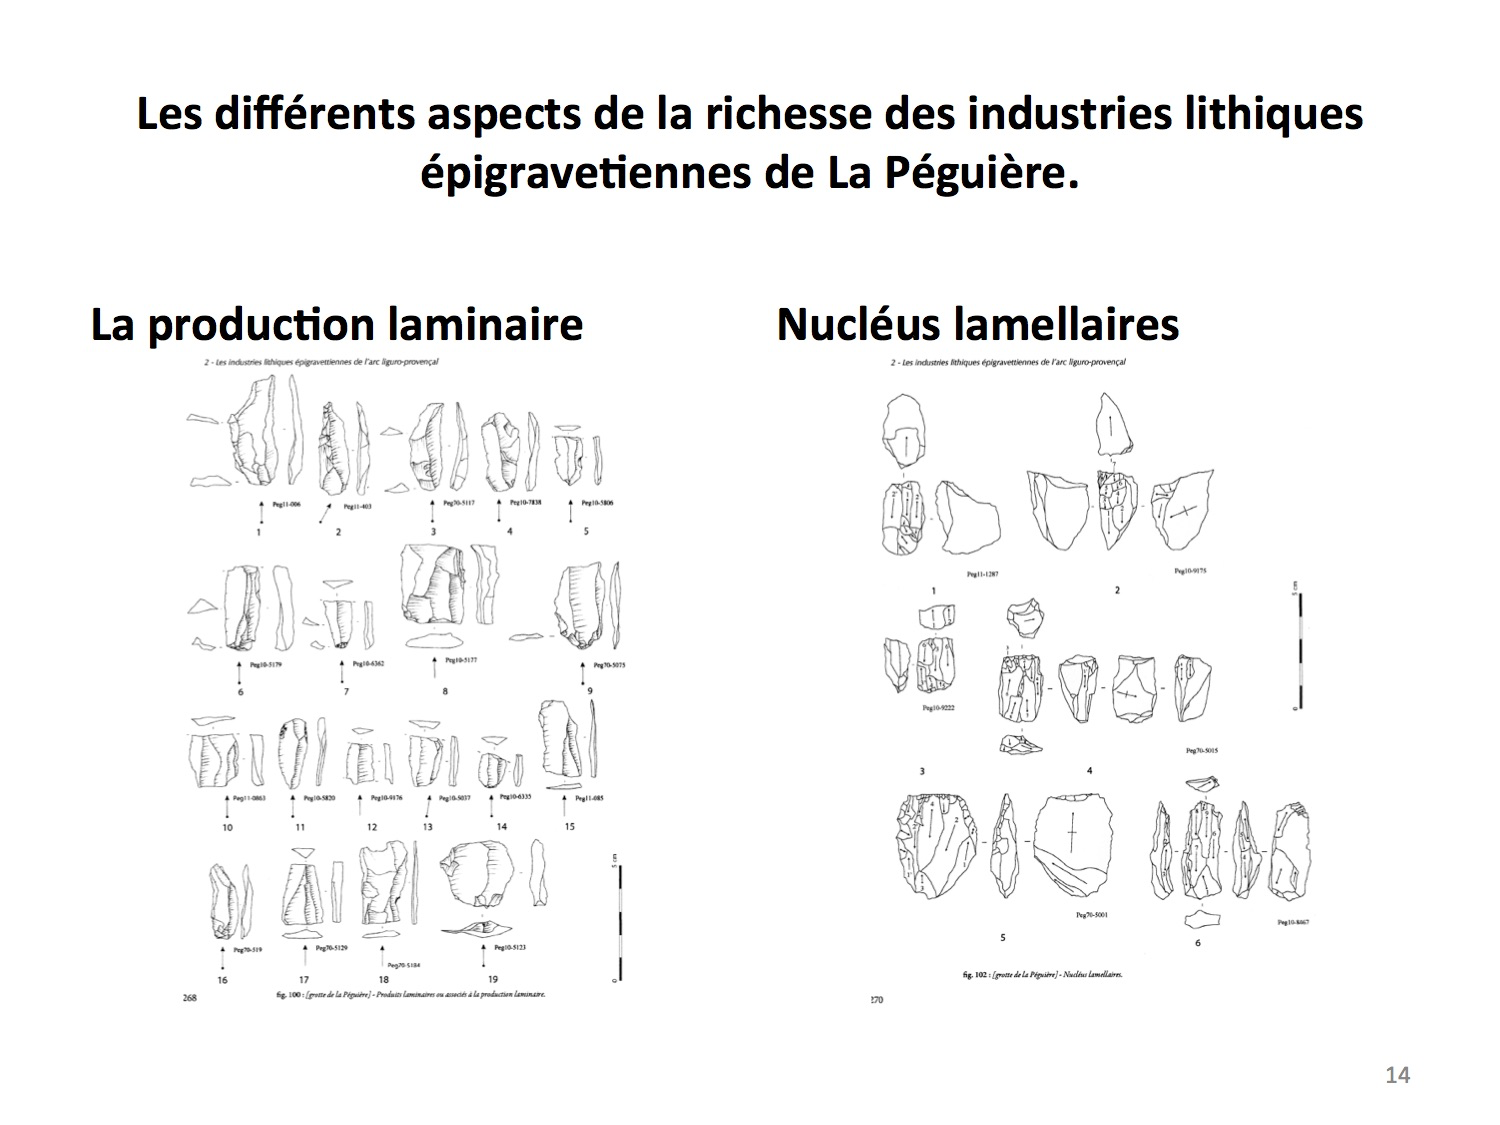 Les différents aspects de la richiesse des industries lithiques épigravetiennes de la Péguière